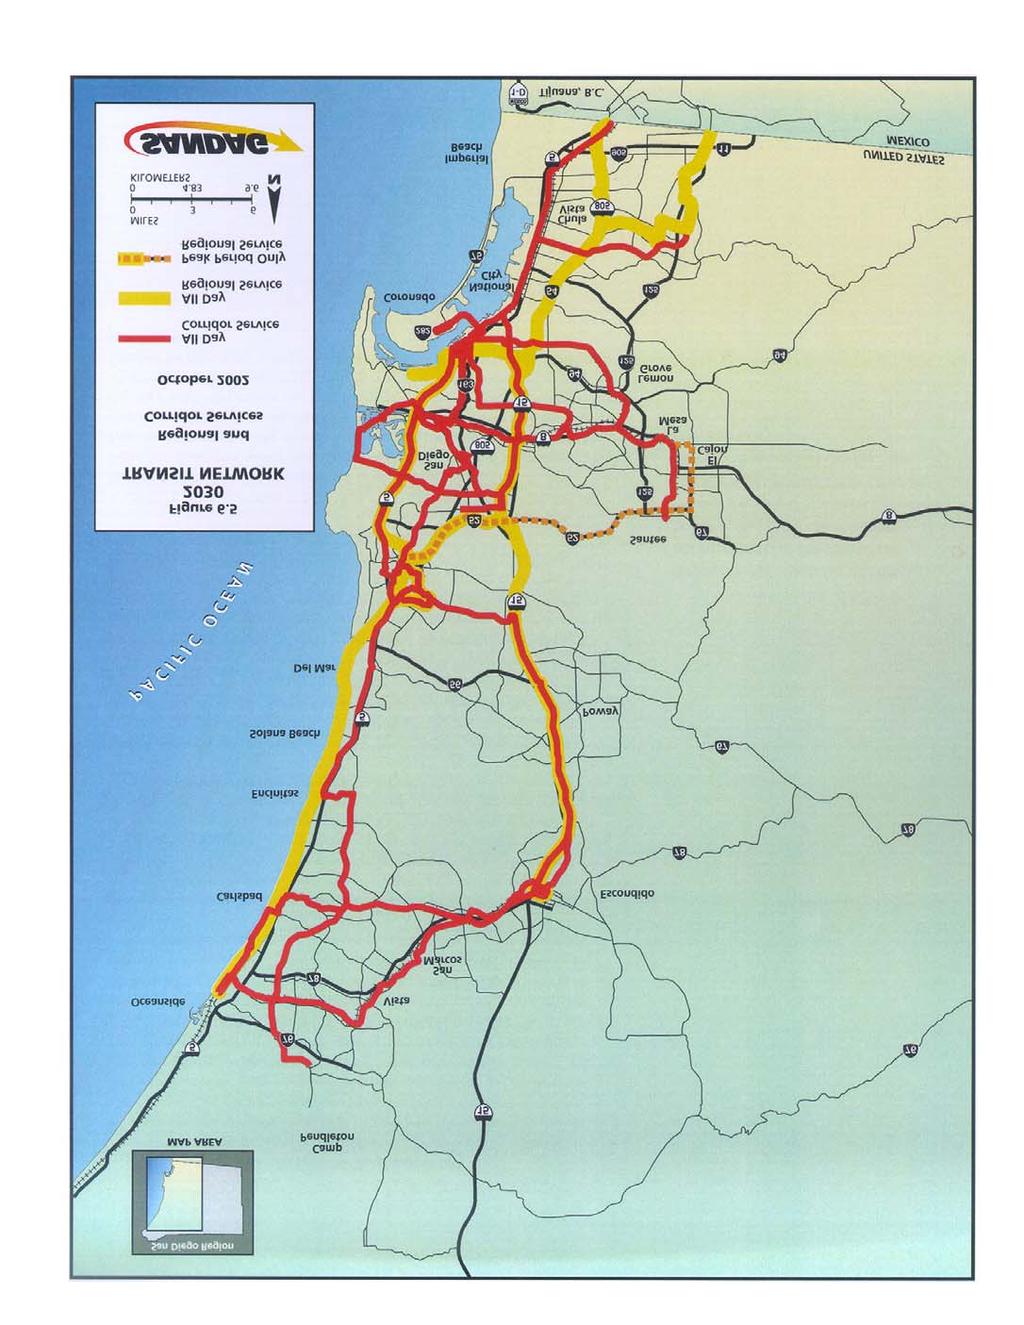 Source: SANDAG Mobility 2030 Draft October 2002